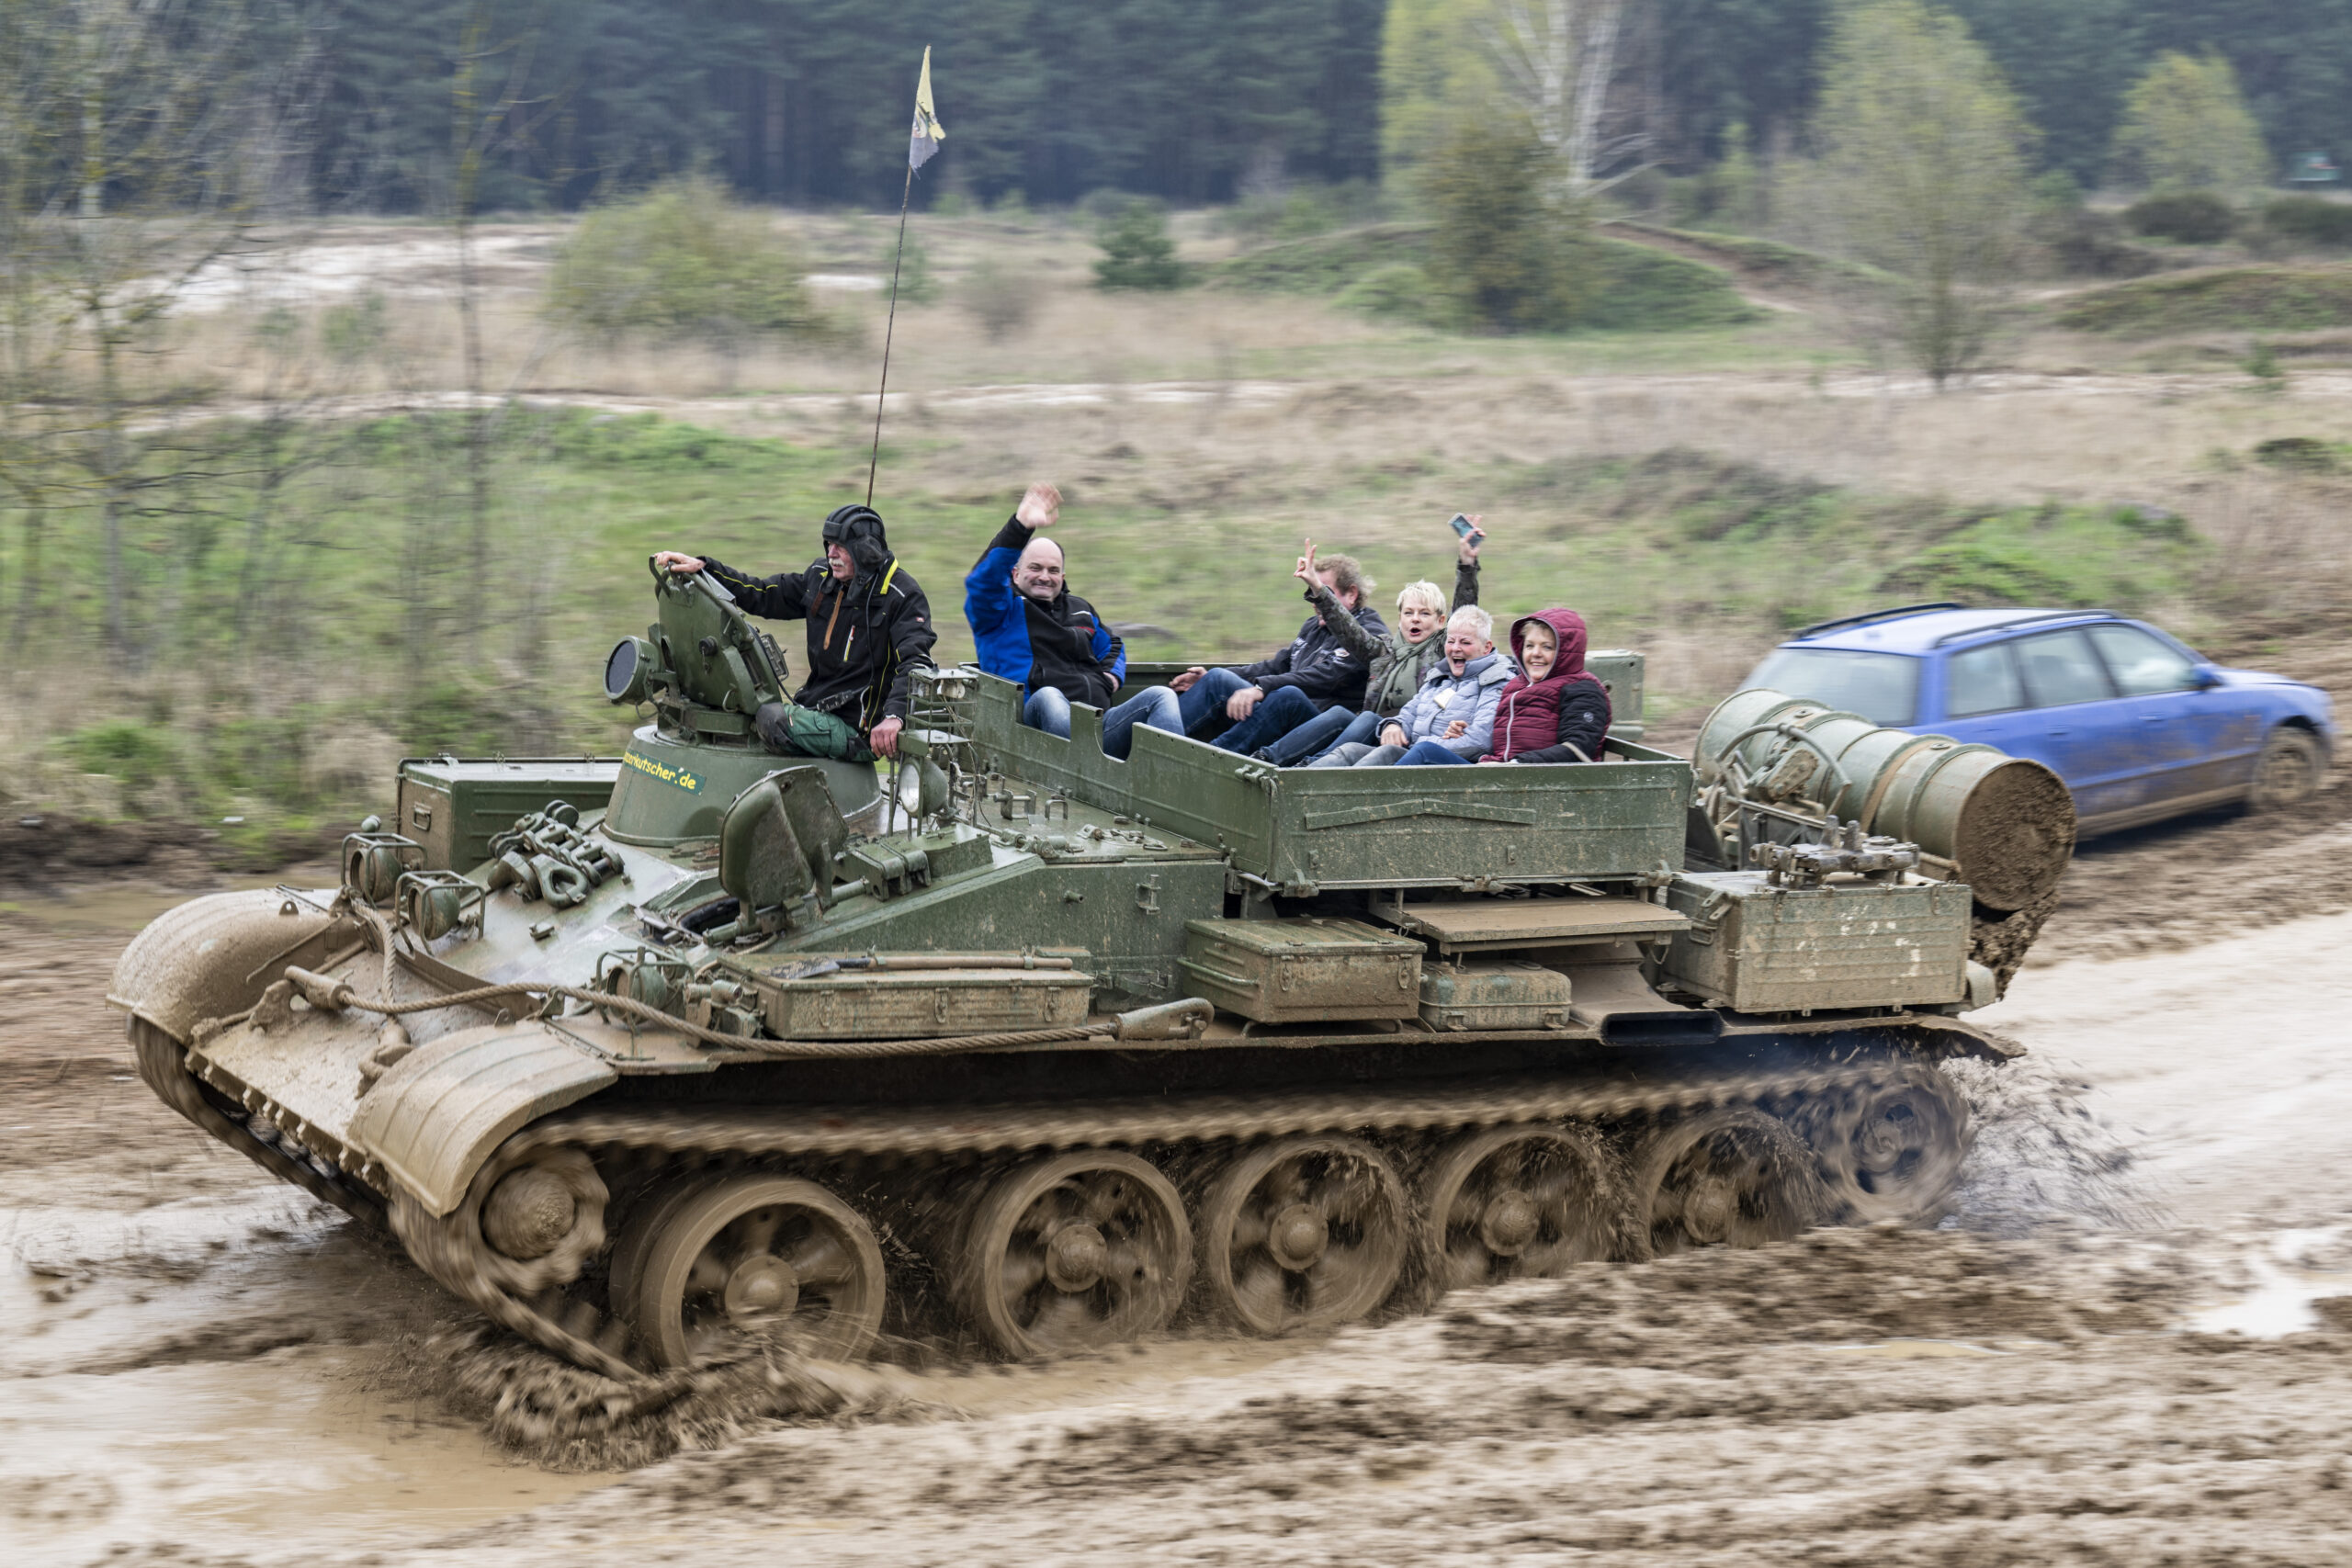 Gäste im T55TK Bergepanzer. Auf dem Gelände der Panzerfahrschule Heyse können Zivilisten mit ehemaligen Militärfahrzeugen fahren.